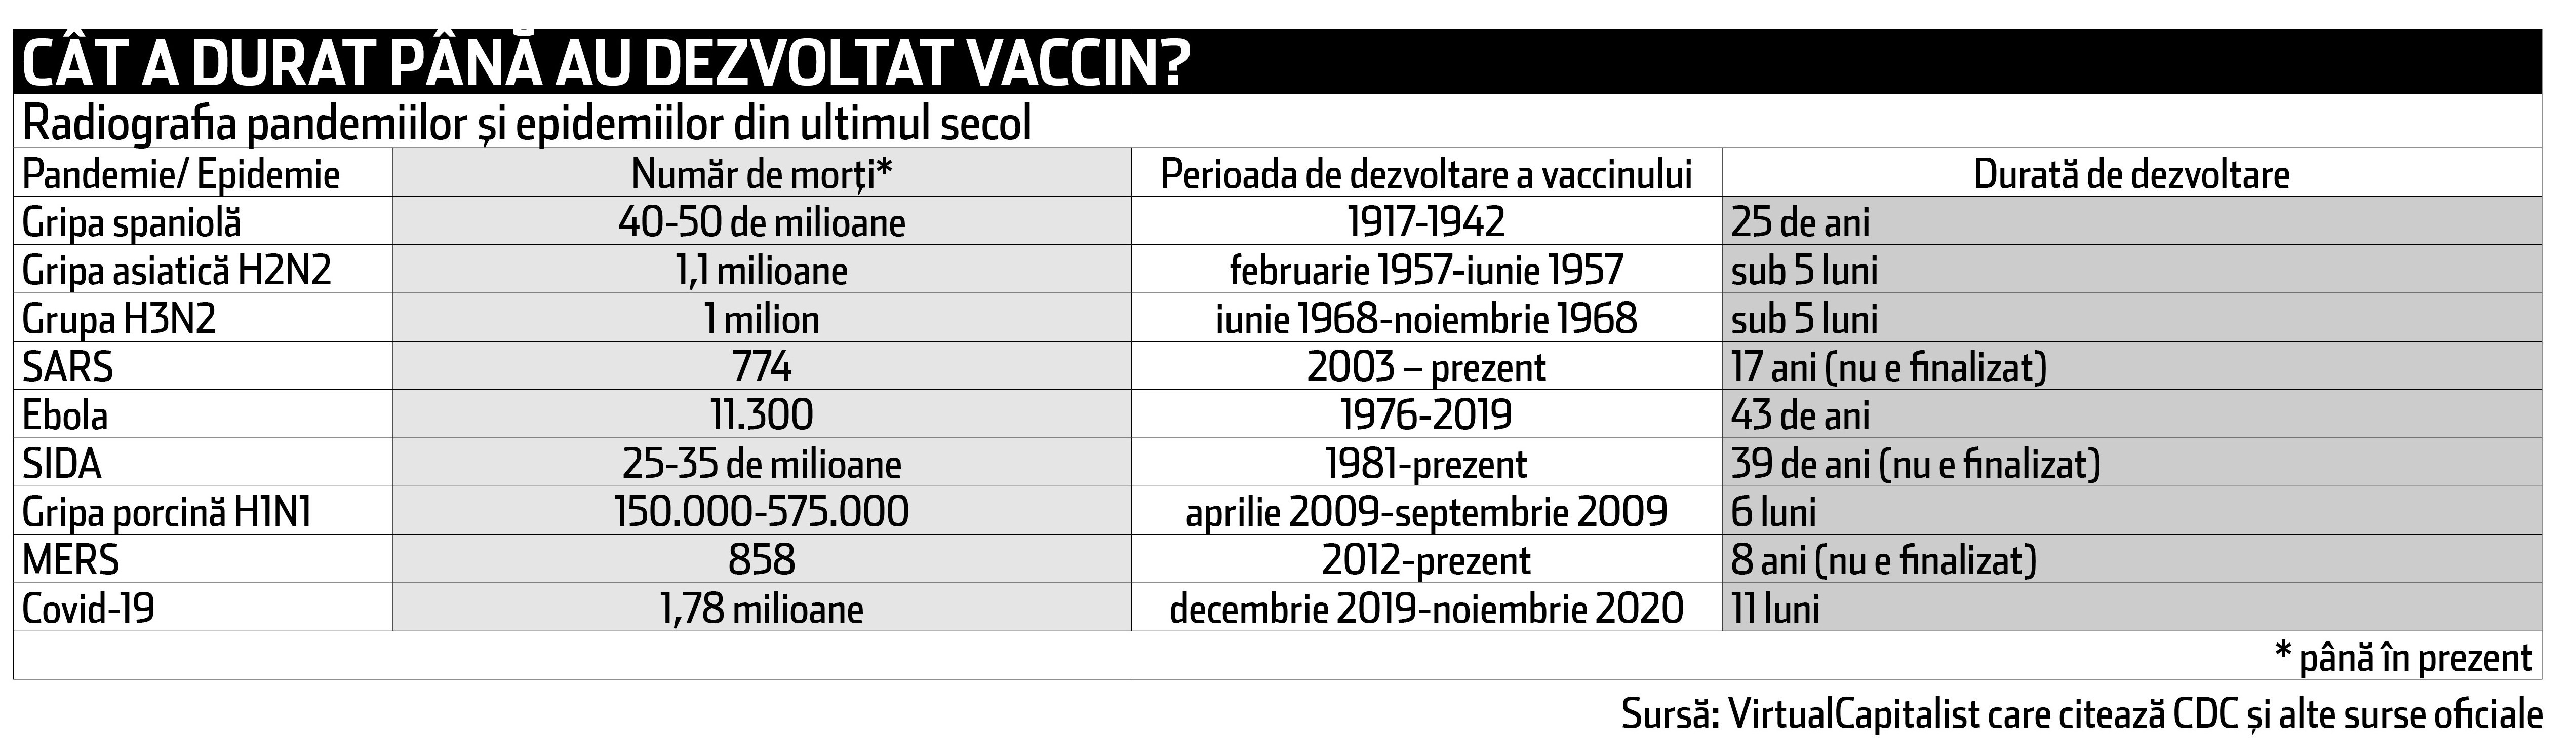 Cursa pentru vaccinul anti Covid-19 a durat “doar” 11 luni. Cât au durat până au fost gata alte vaccinuri, despre care s-a spus că au fost testate un timp mai îndelungat?